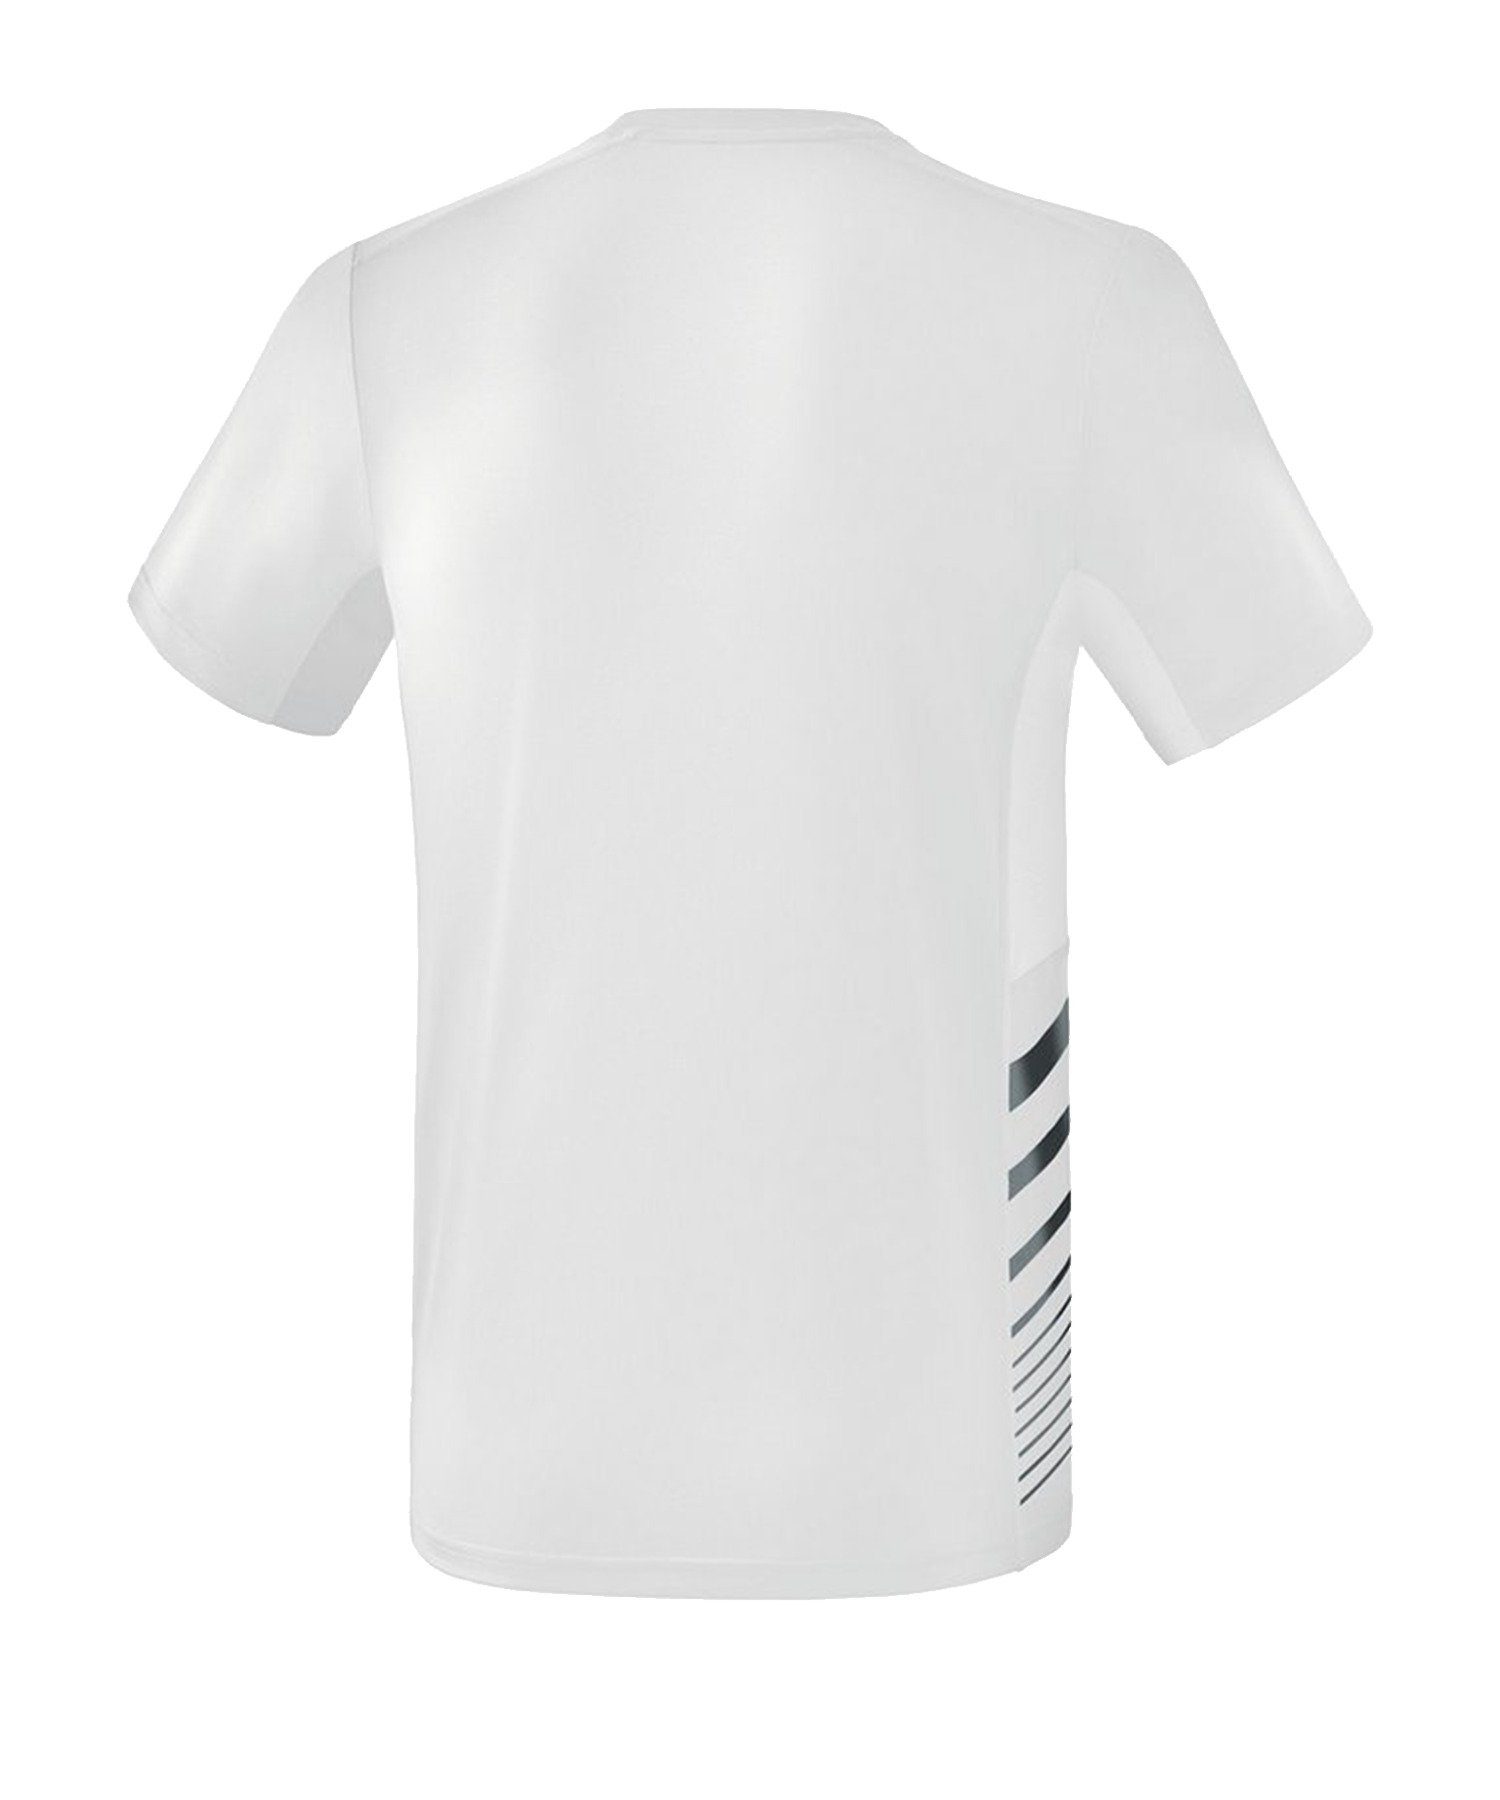 Erima T-Shirt Race Line Weiss 2.0 Running T-Shirt default